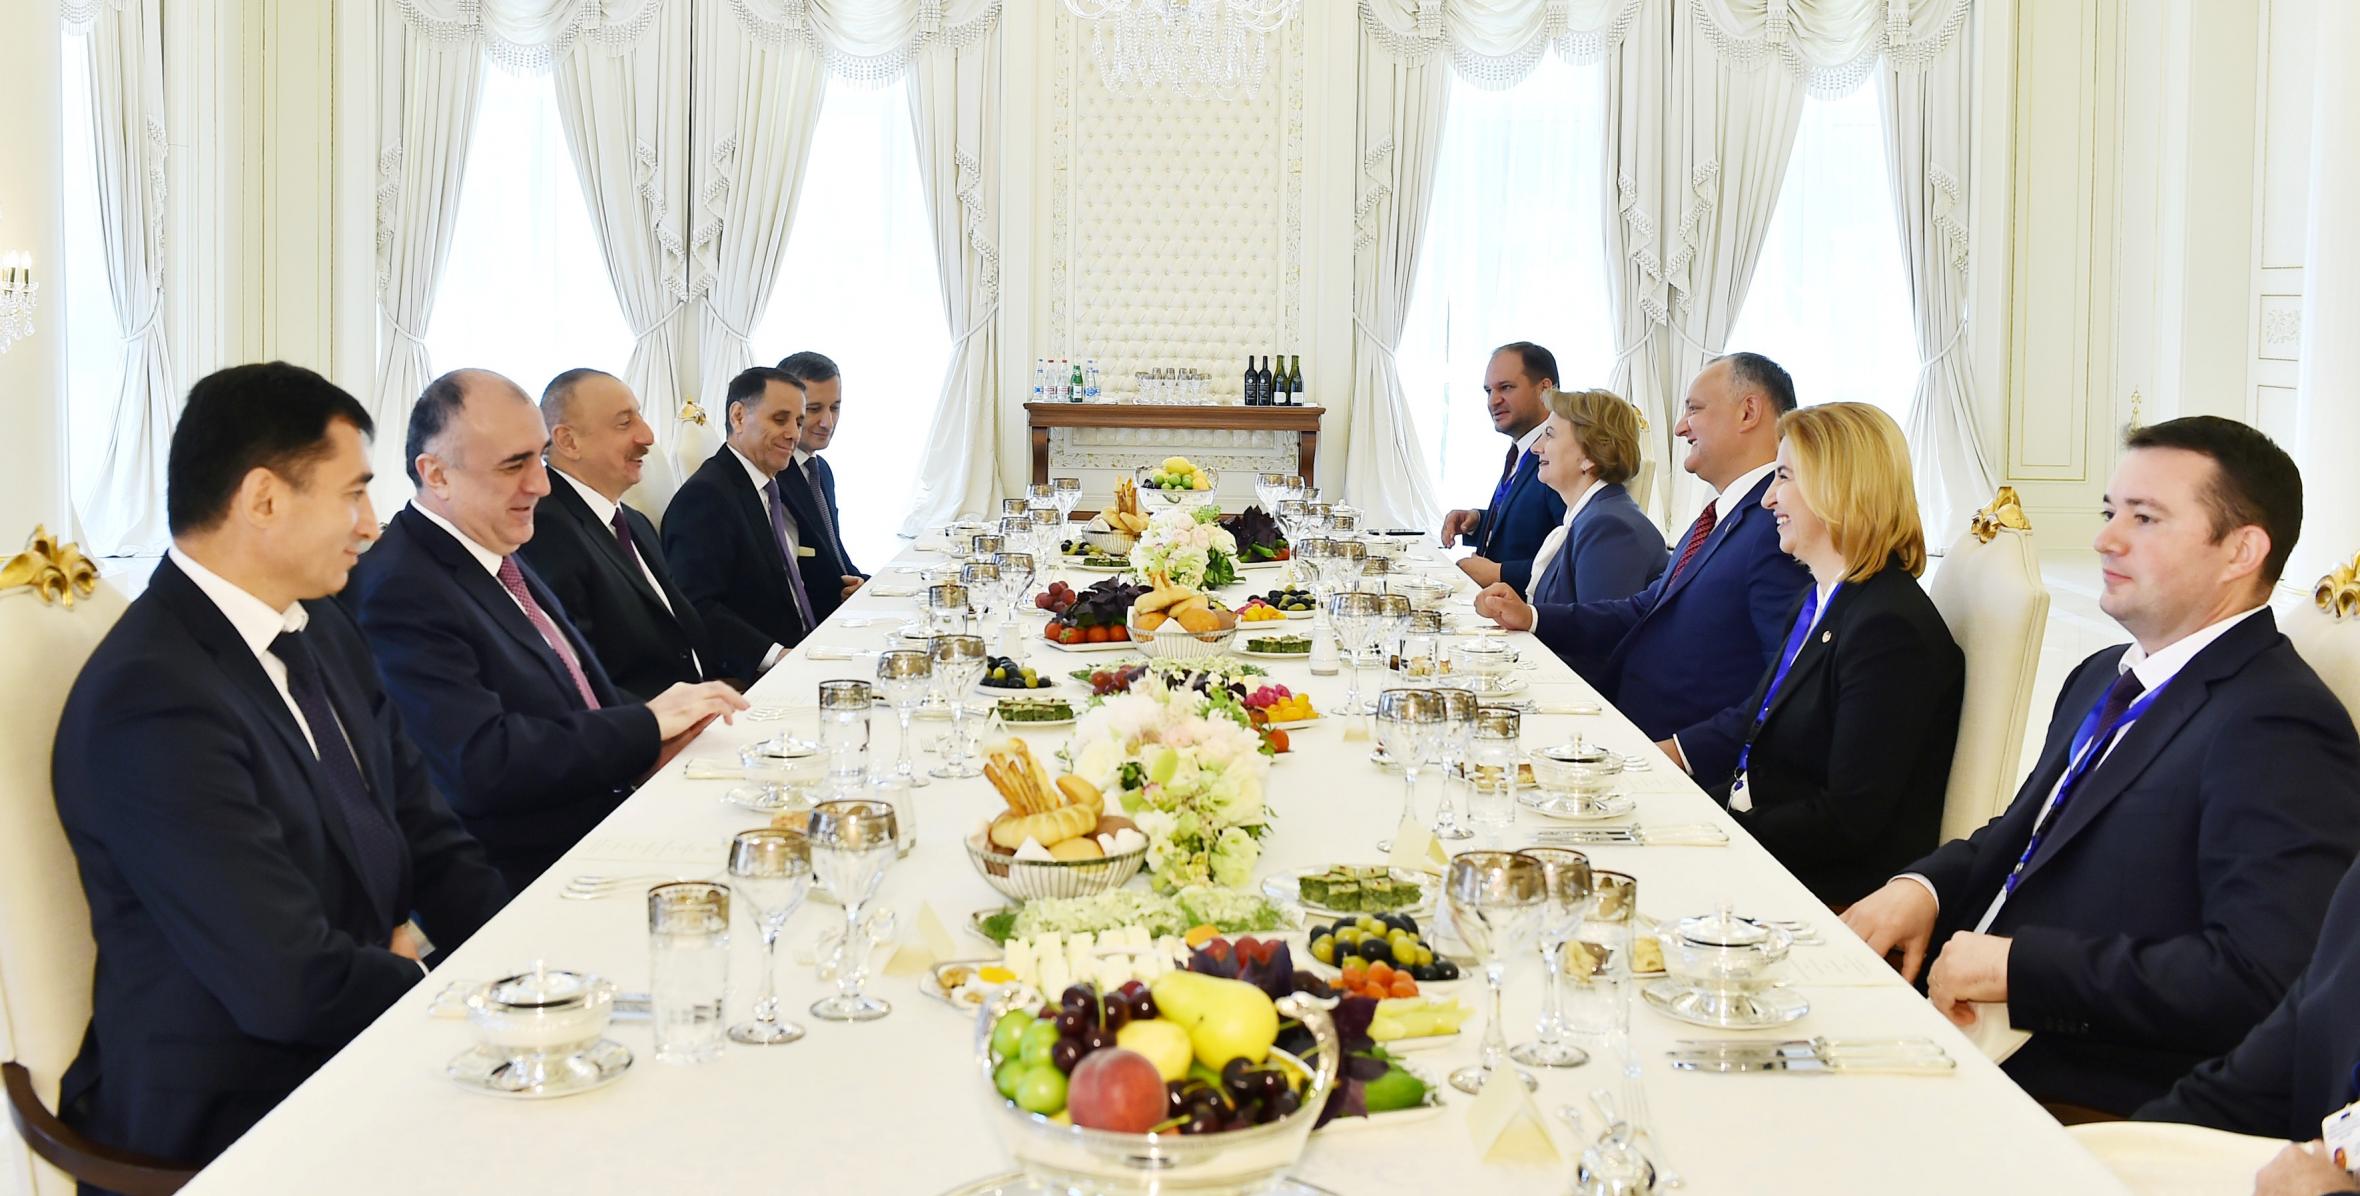 От имени Ильхама Алиева был дан официальный обед в честь Президента Республики Молдова Игоря Додона